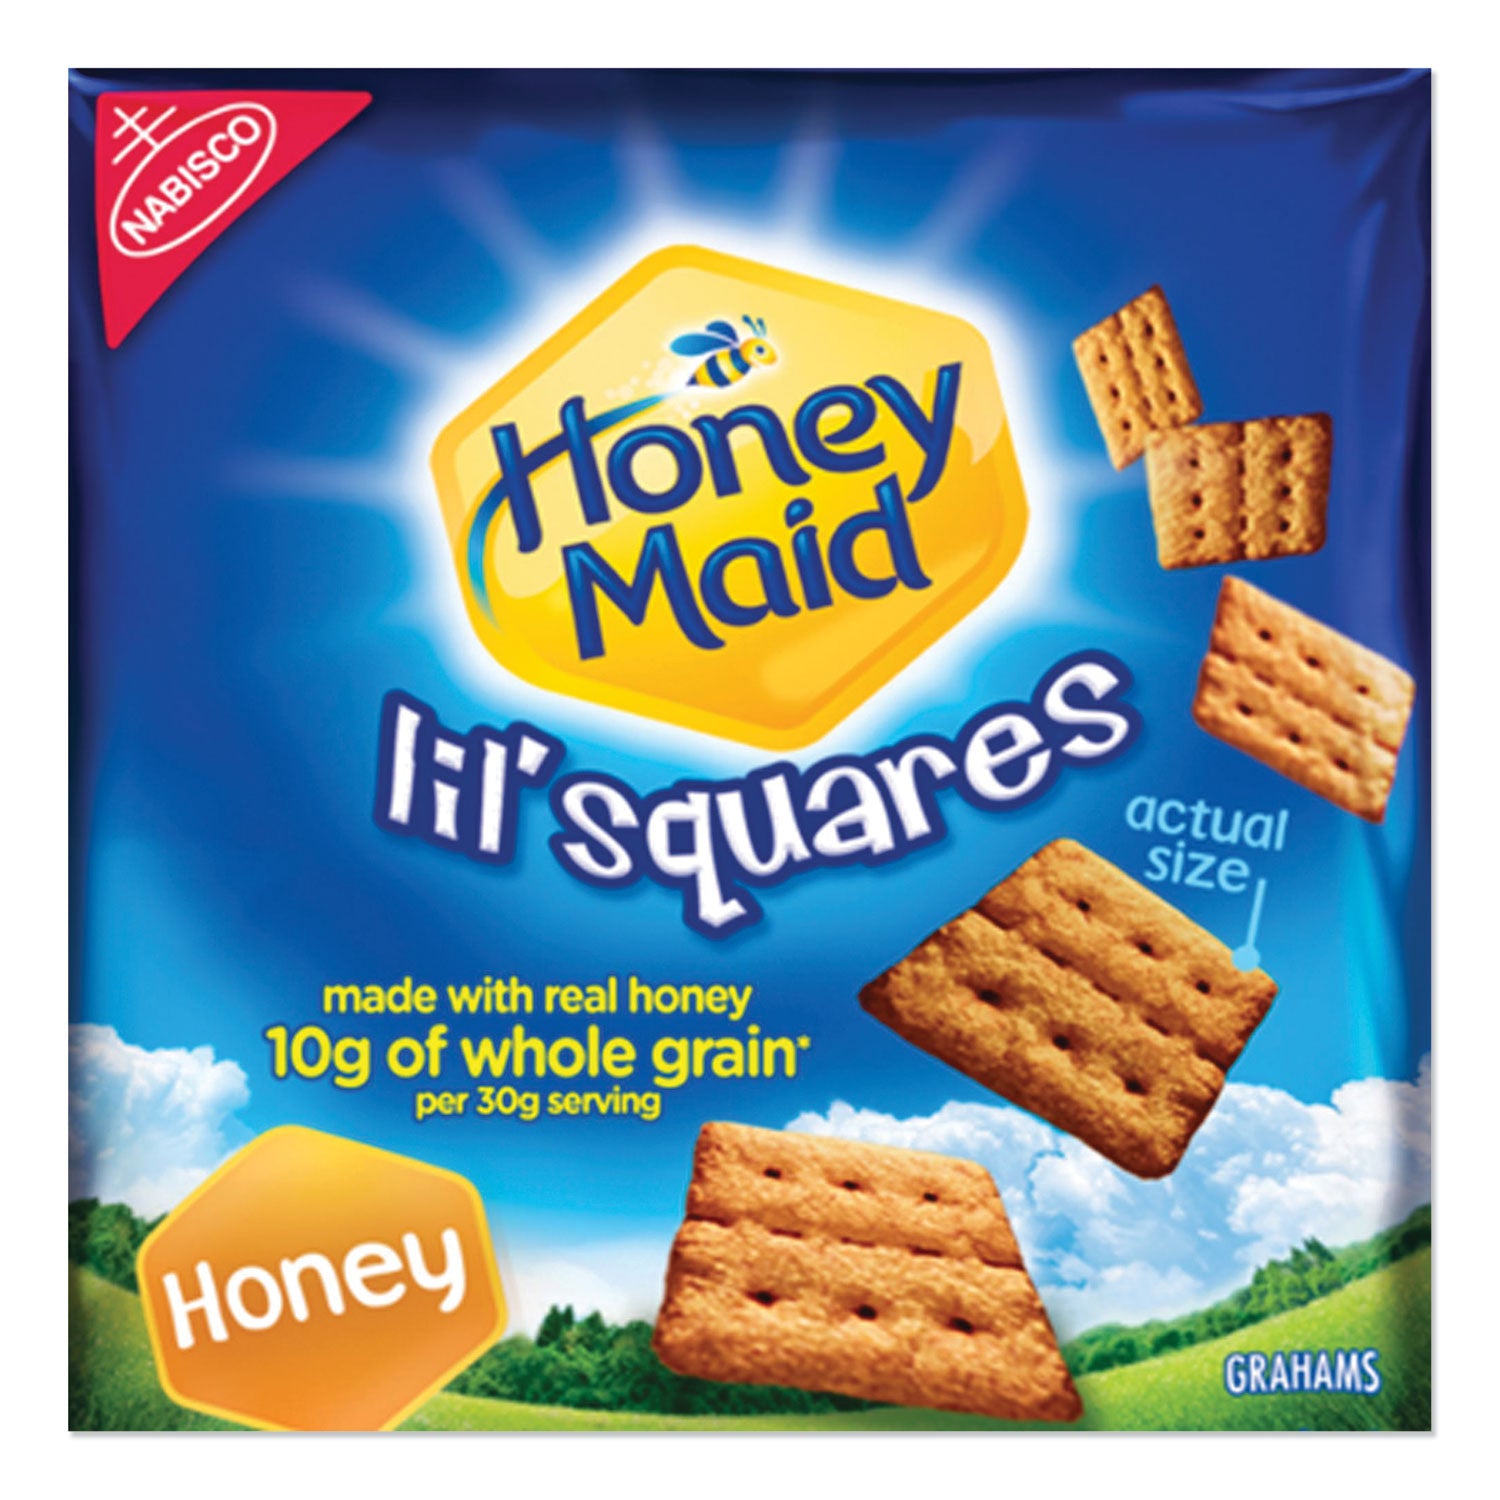 honey-maid-lil-squares-graham-crackers-honey-106-oz-bag-72-carton_nfg001932000166 - 1